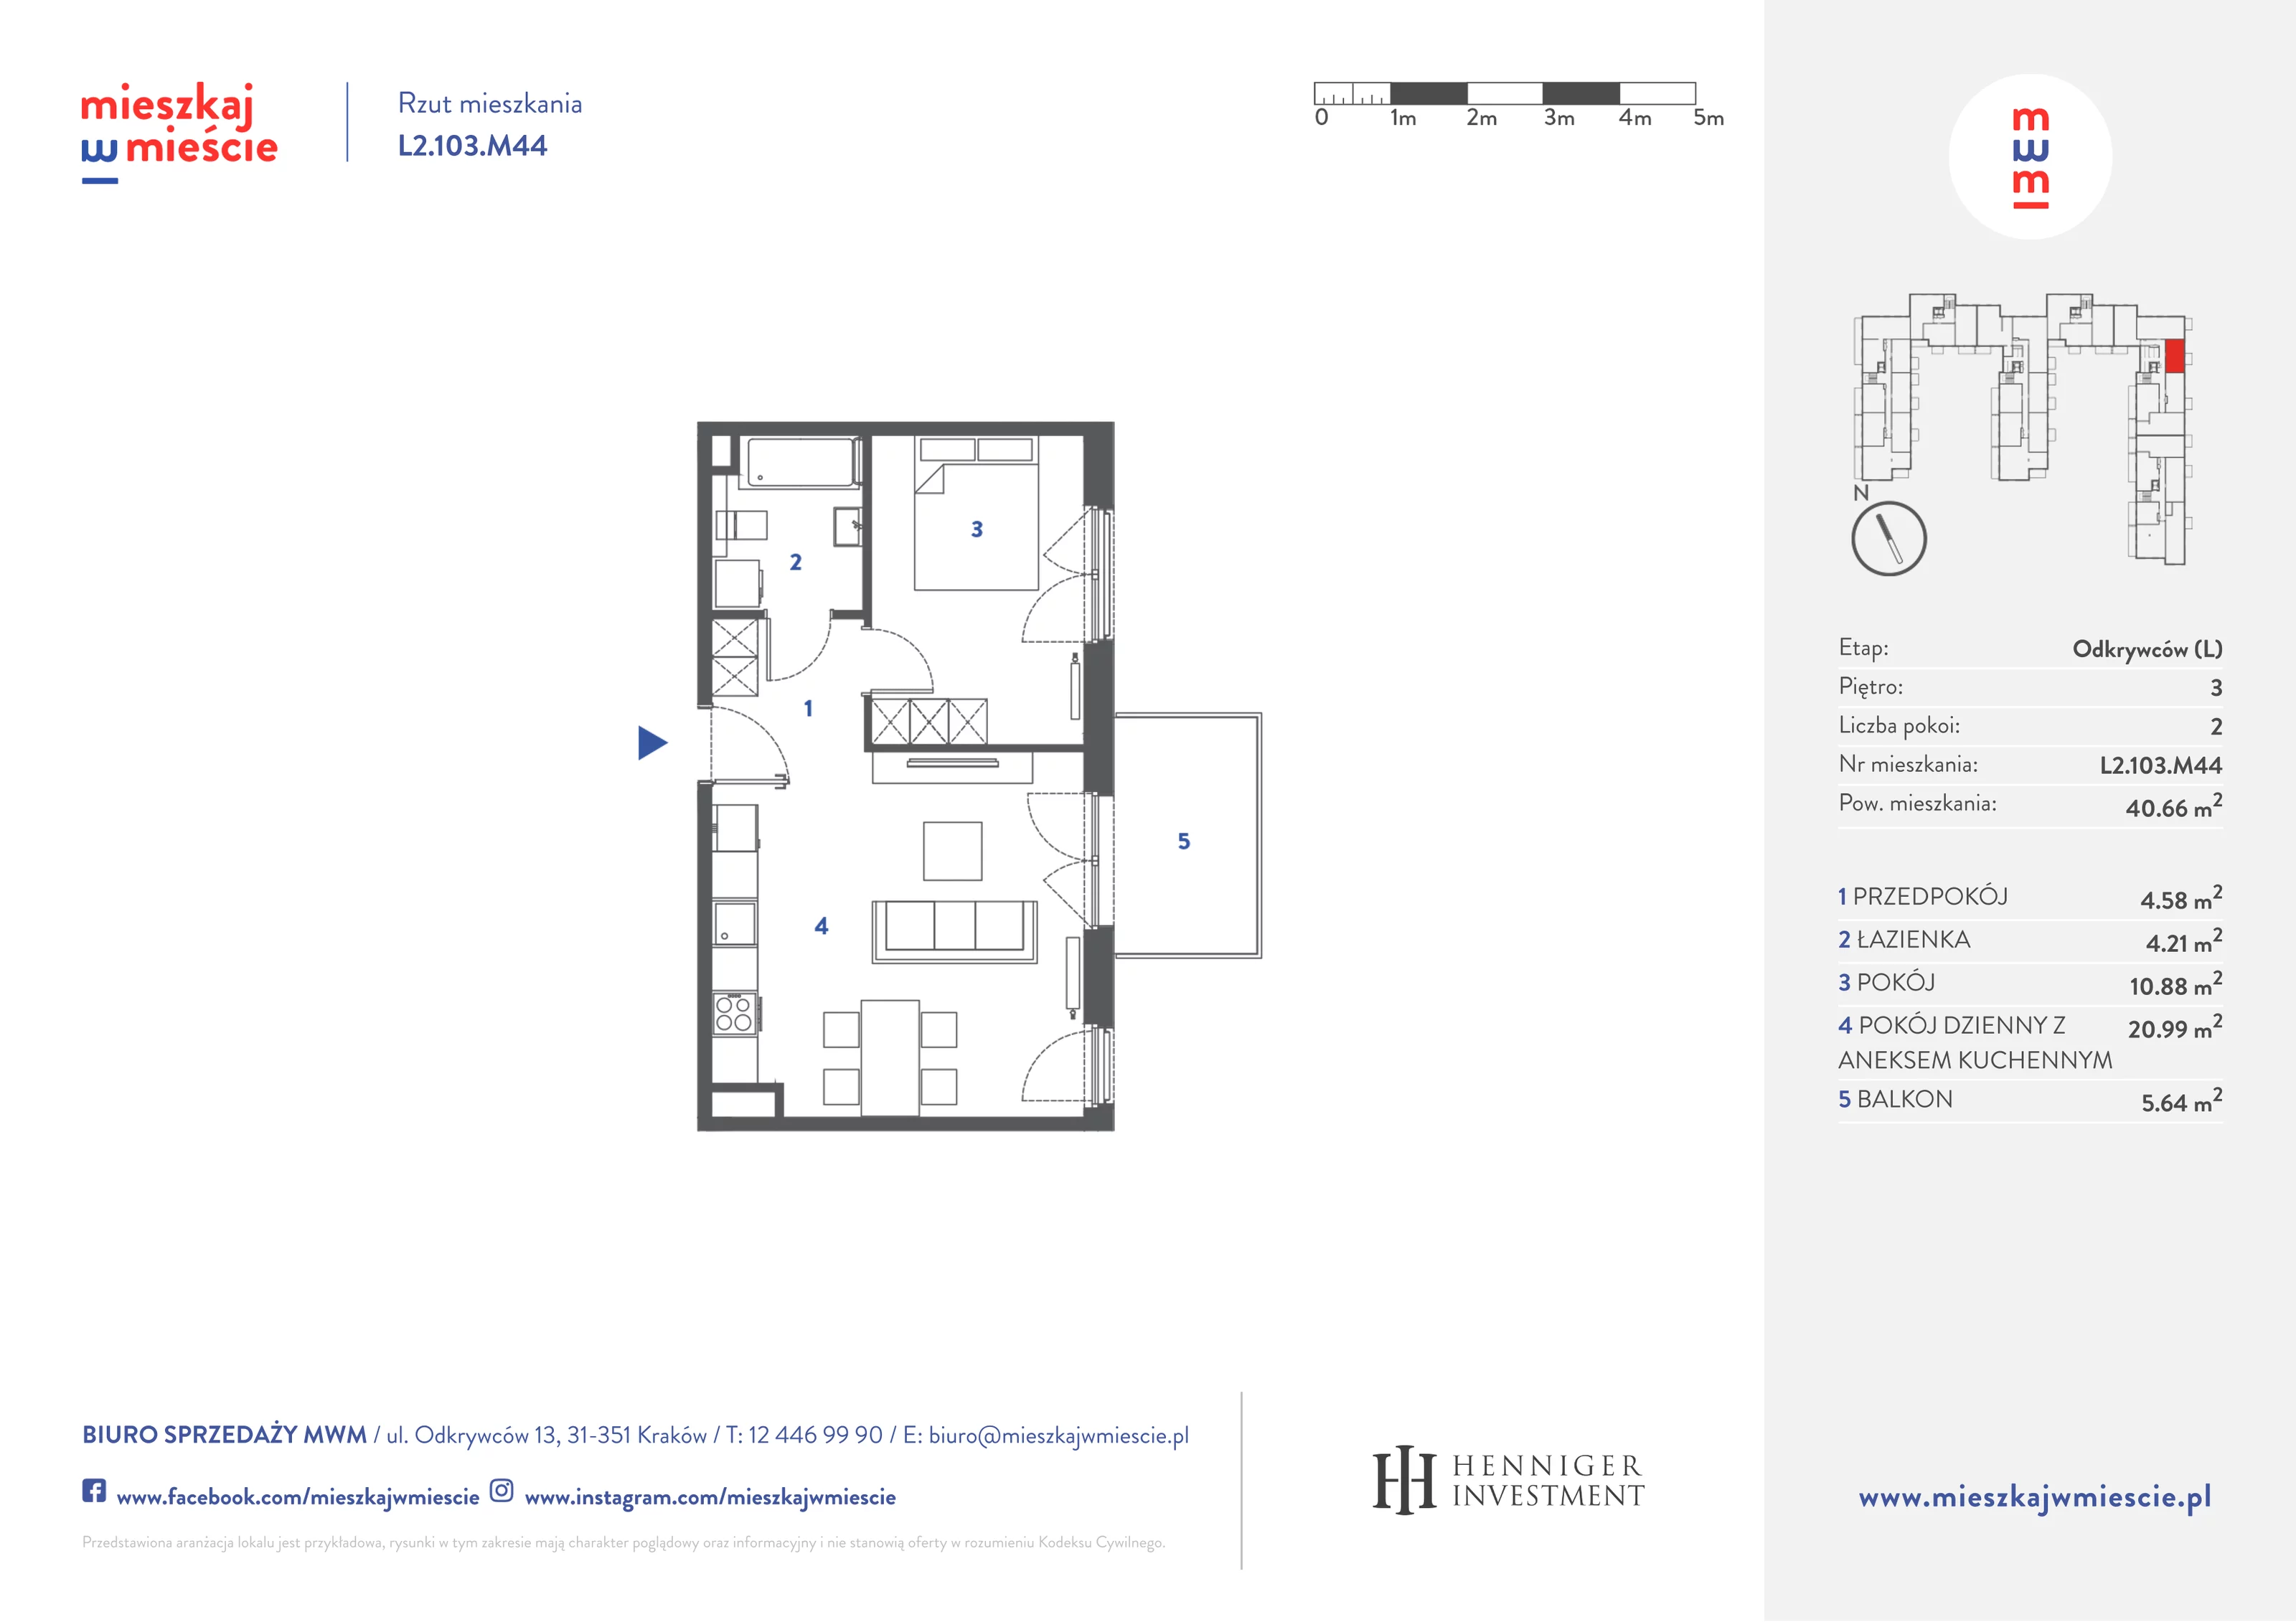 Mieszkanie 40,83 m², piętro 3, oferta nr L2.103.M44, Mieszkaj w Mieście - Odkrywców L, Kraków, Bronowice, ul. Wizjonerów